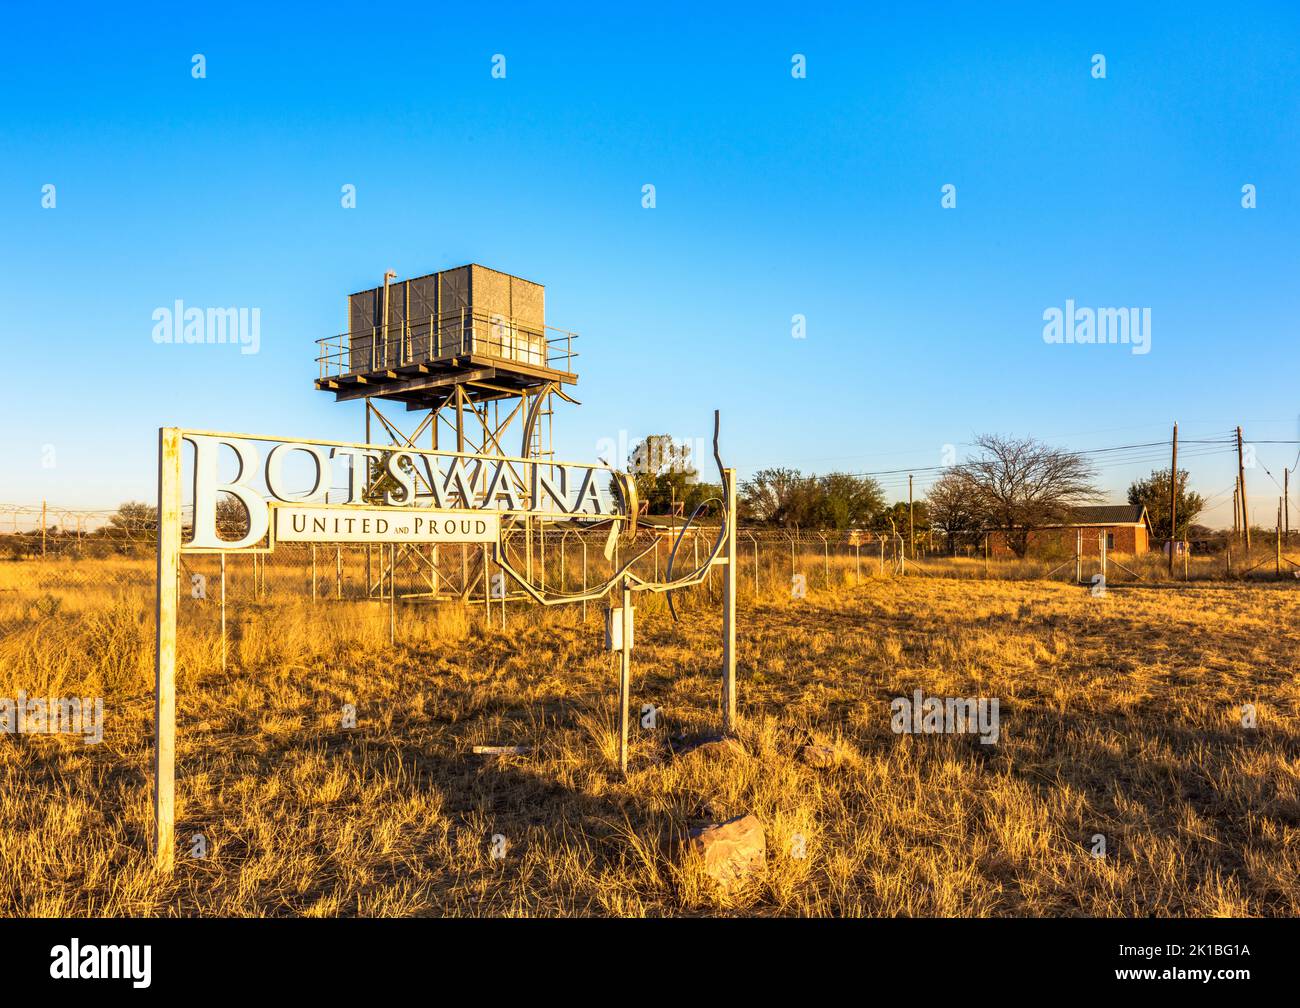 MAMUNO, BOTSWANA - 13 AOÛT 2022 : panneau « BOTSWANA - Unis et fiers » à la frontière entre la Namibie et le Botswana Banque D'Images